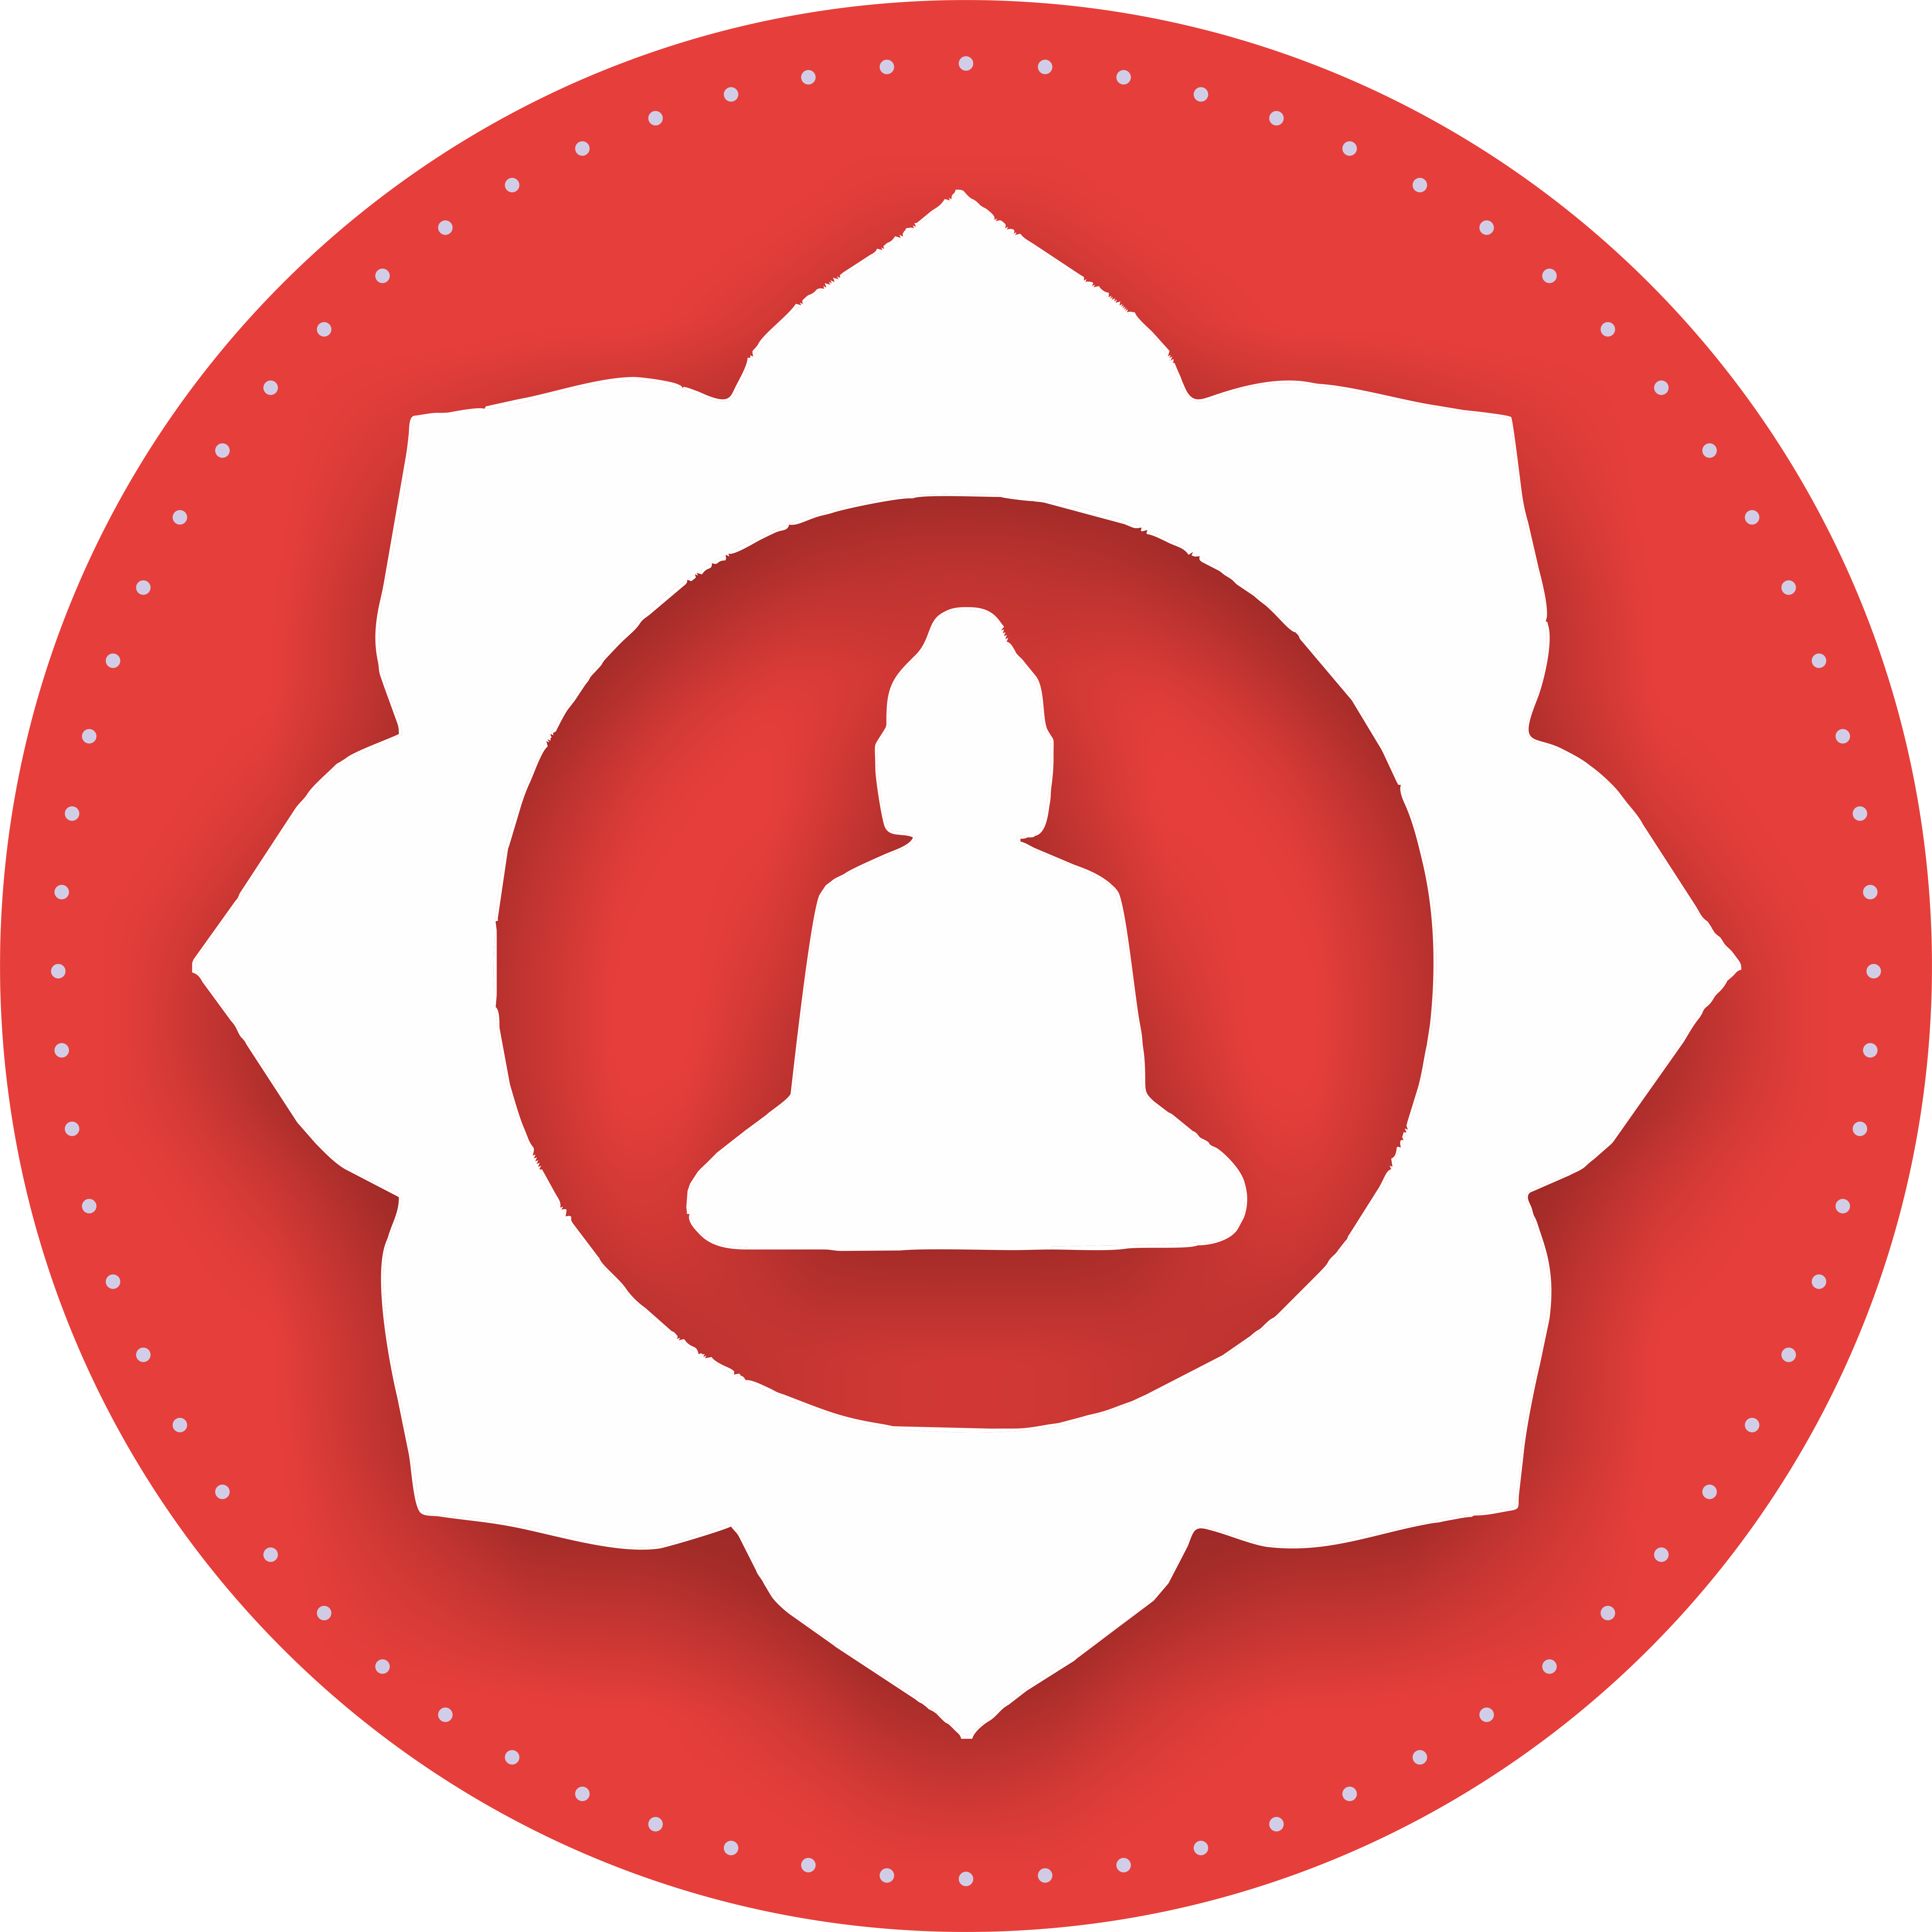 Buddhism Logo - Wallpaper : illustration, logo, circle, symbols, Buddhism, Buddha ...